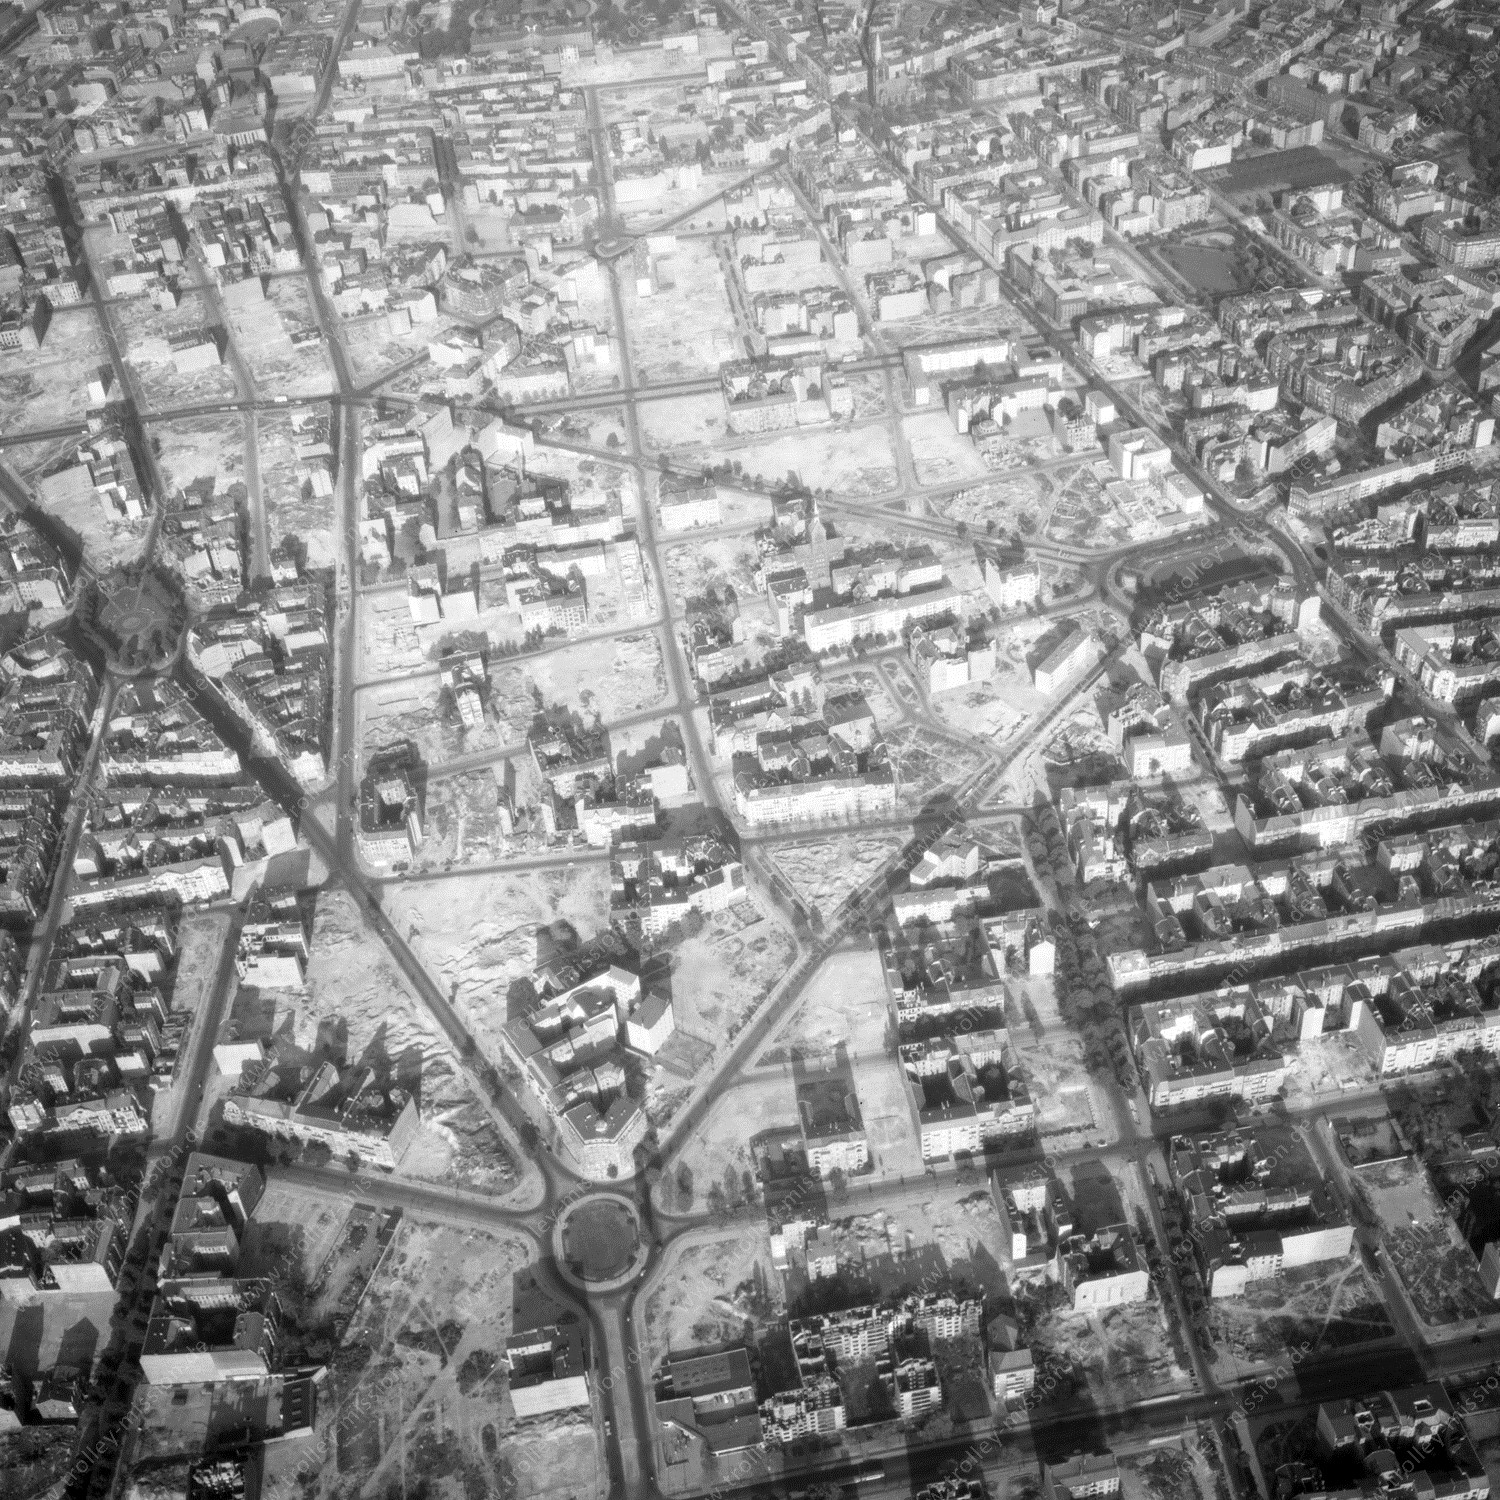 Alte Fotos und Luftbilder von Berlin - Luftbildaufnahme Nr. 06 - Historische Luftaufnahmen von West-Berlin aus dem Jahr 1954 - Flugstrecke Echo